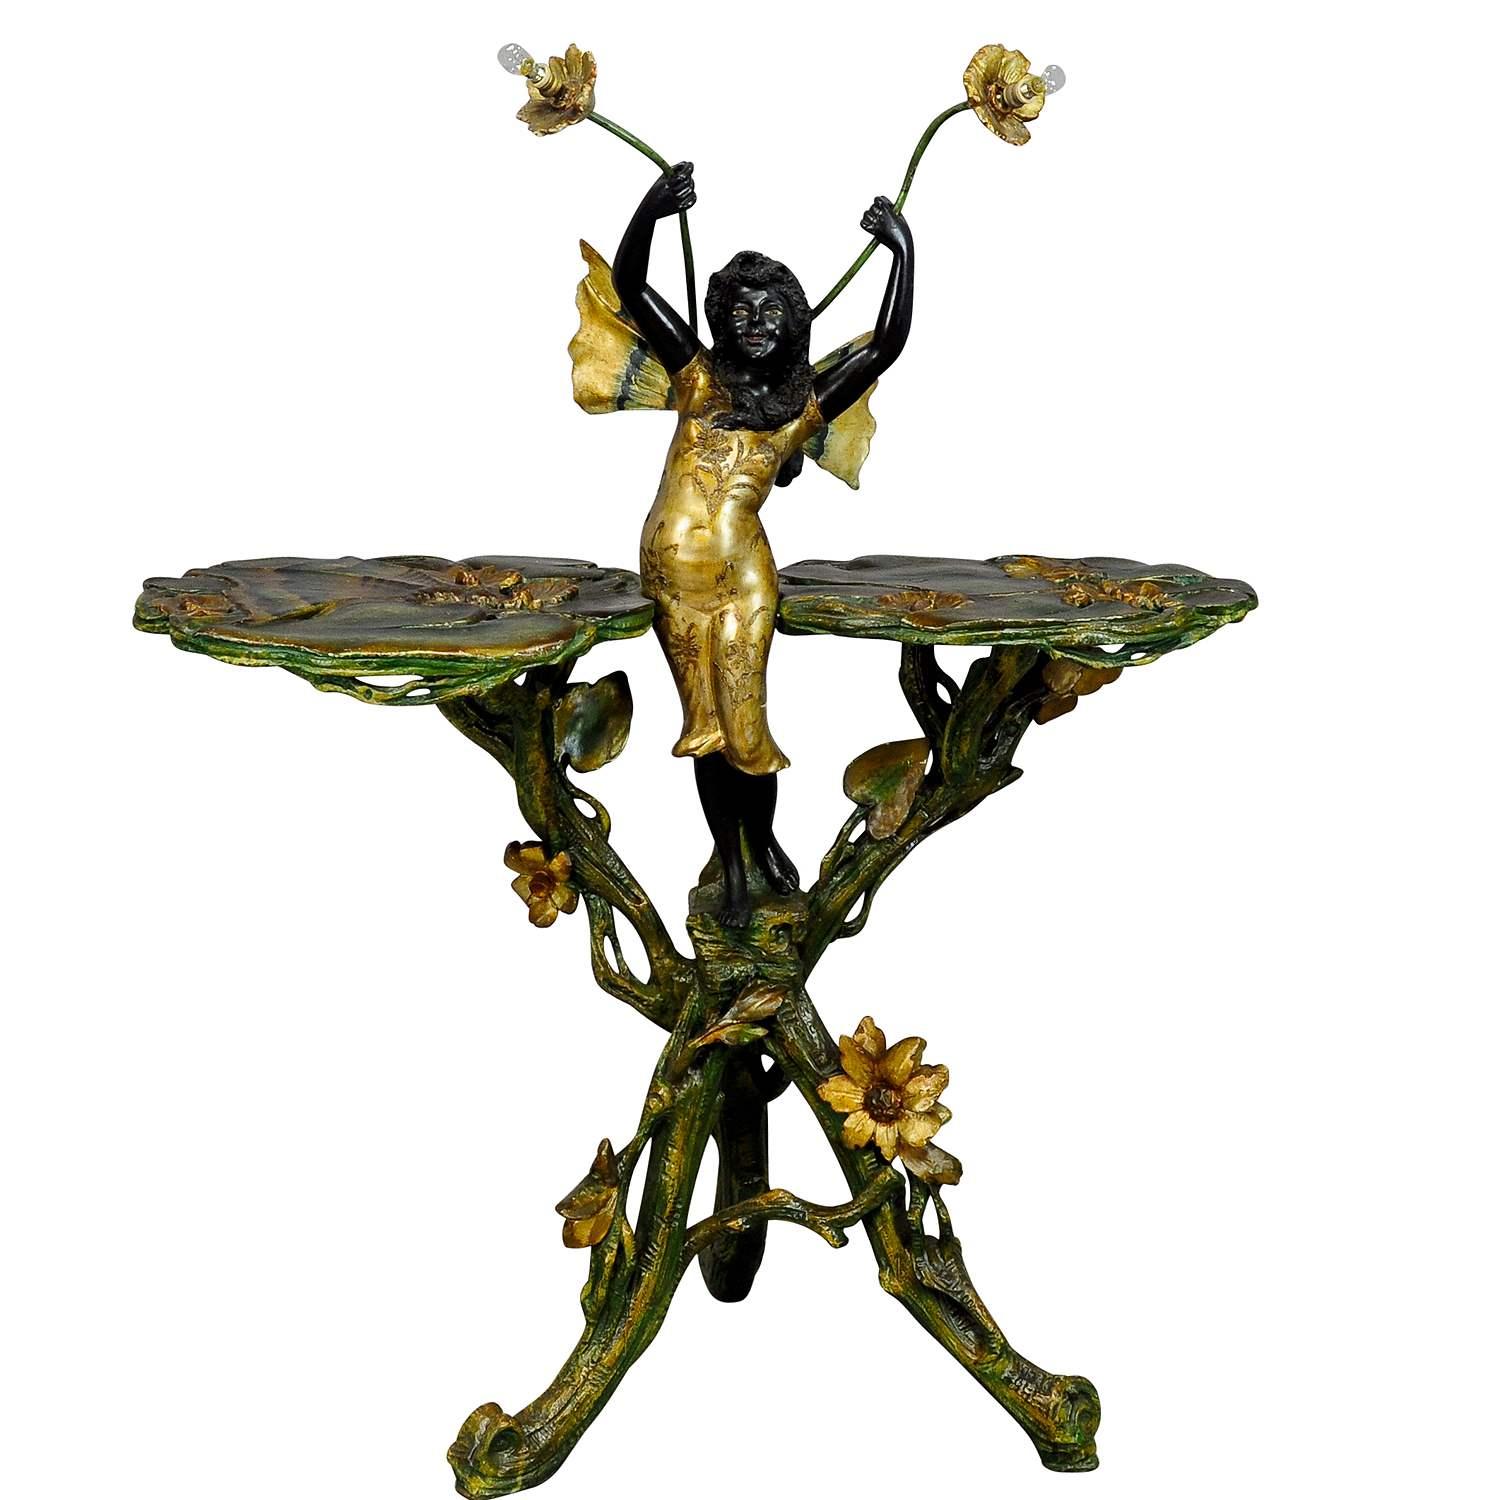 Venezianischer Grottentisch des 19. Jahrhunderts mit Märchenelfe

Ein wunderschöner venezianischer Grottenbeistelltisch mit einer Fee und Beleuchtung. Das Holz ist floral geschnitzt mit Gliedmaßen, Laub und Blumen, zwei Tischplatten mit geschnitzten